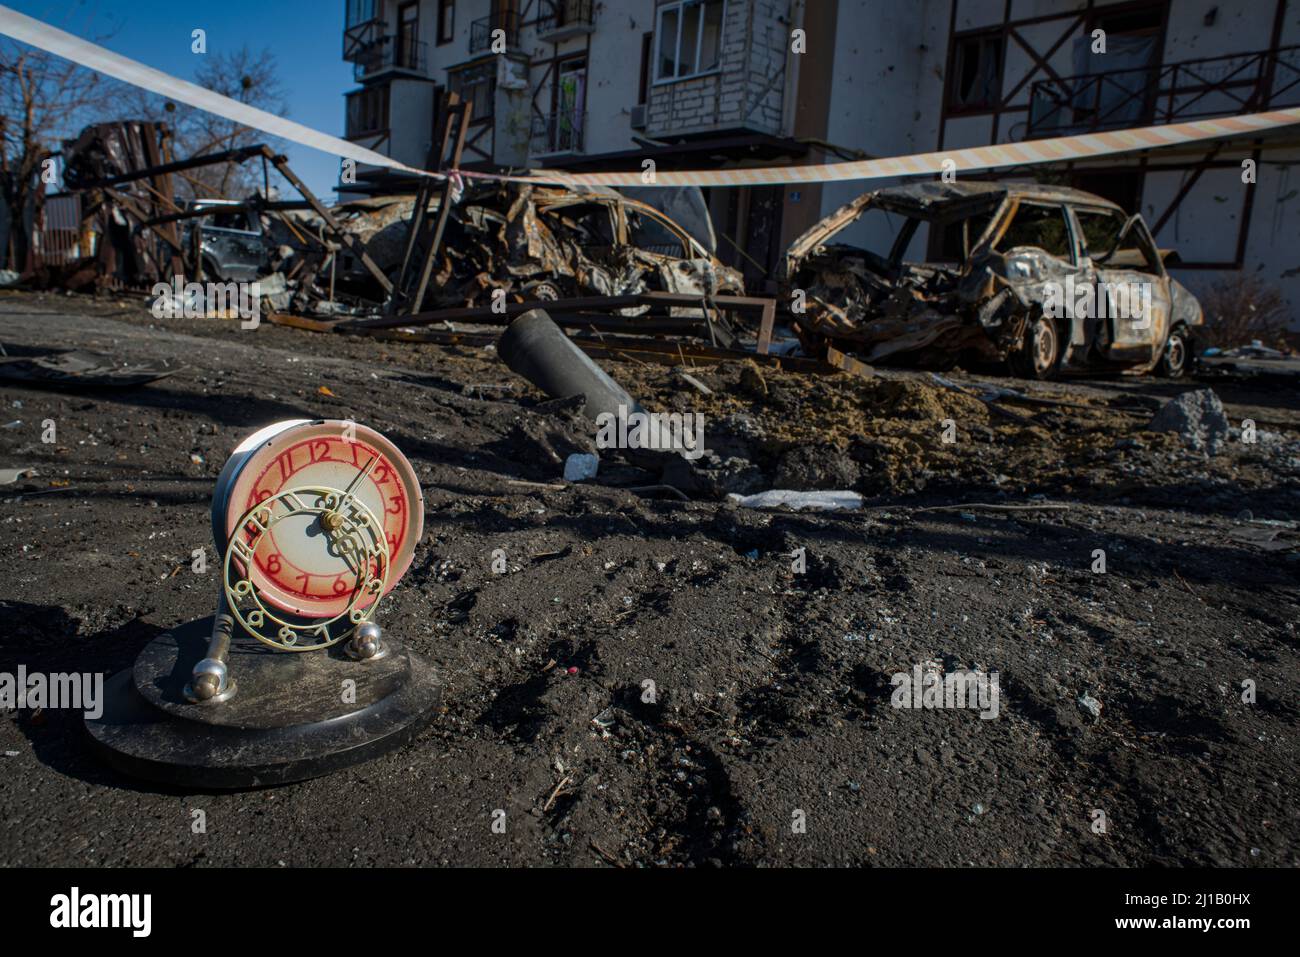 Eine Uhr, die gegen 5 UHR ANGEHALTEN und durch die Explosion einer  russischen Rakete aus dem Wohnhaus geblasen wurde. Ein Teil des  Raketenkörpers und verbrannte Autos. Charkiw, Ukraine Stockfotografie -  Alamy